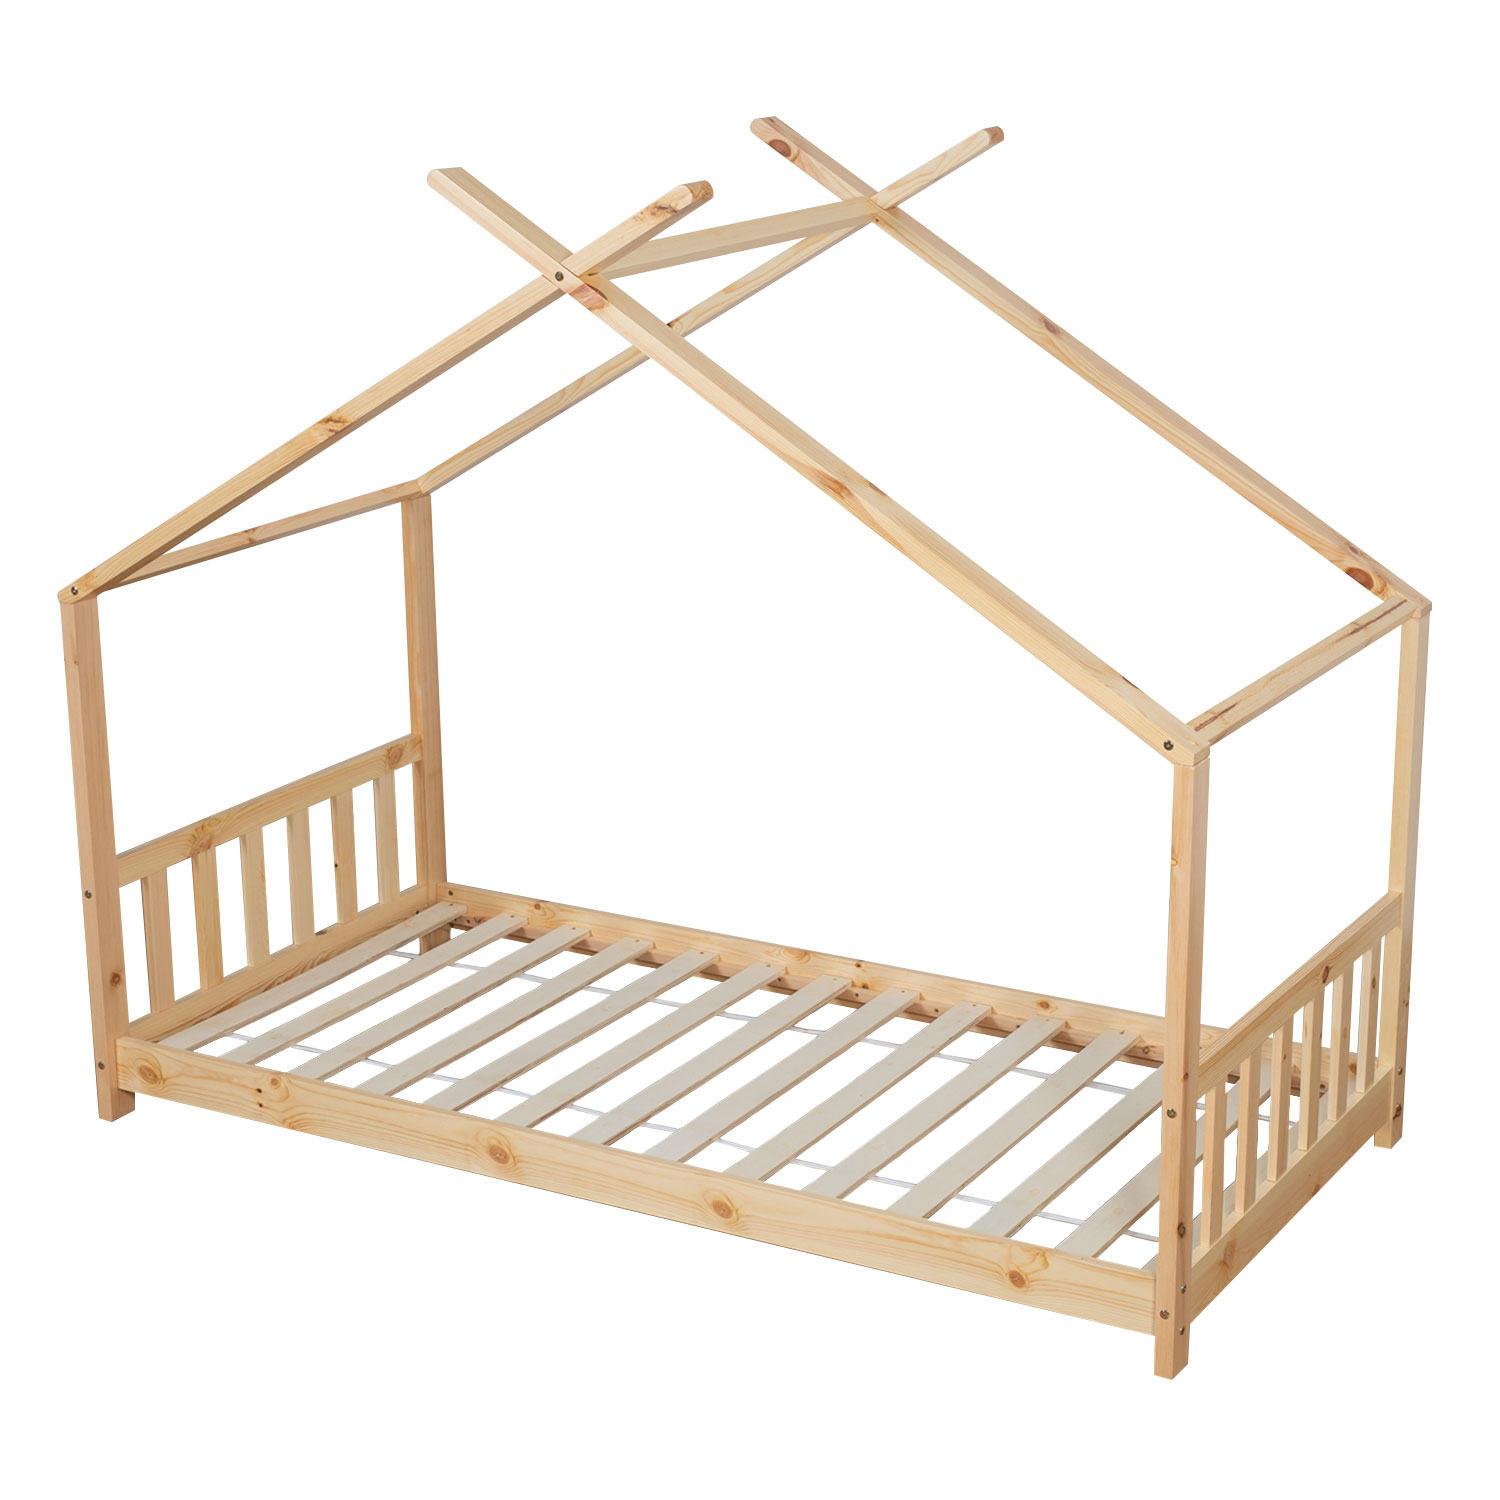 GASPARD cama de madeira para crianças 190x90cm